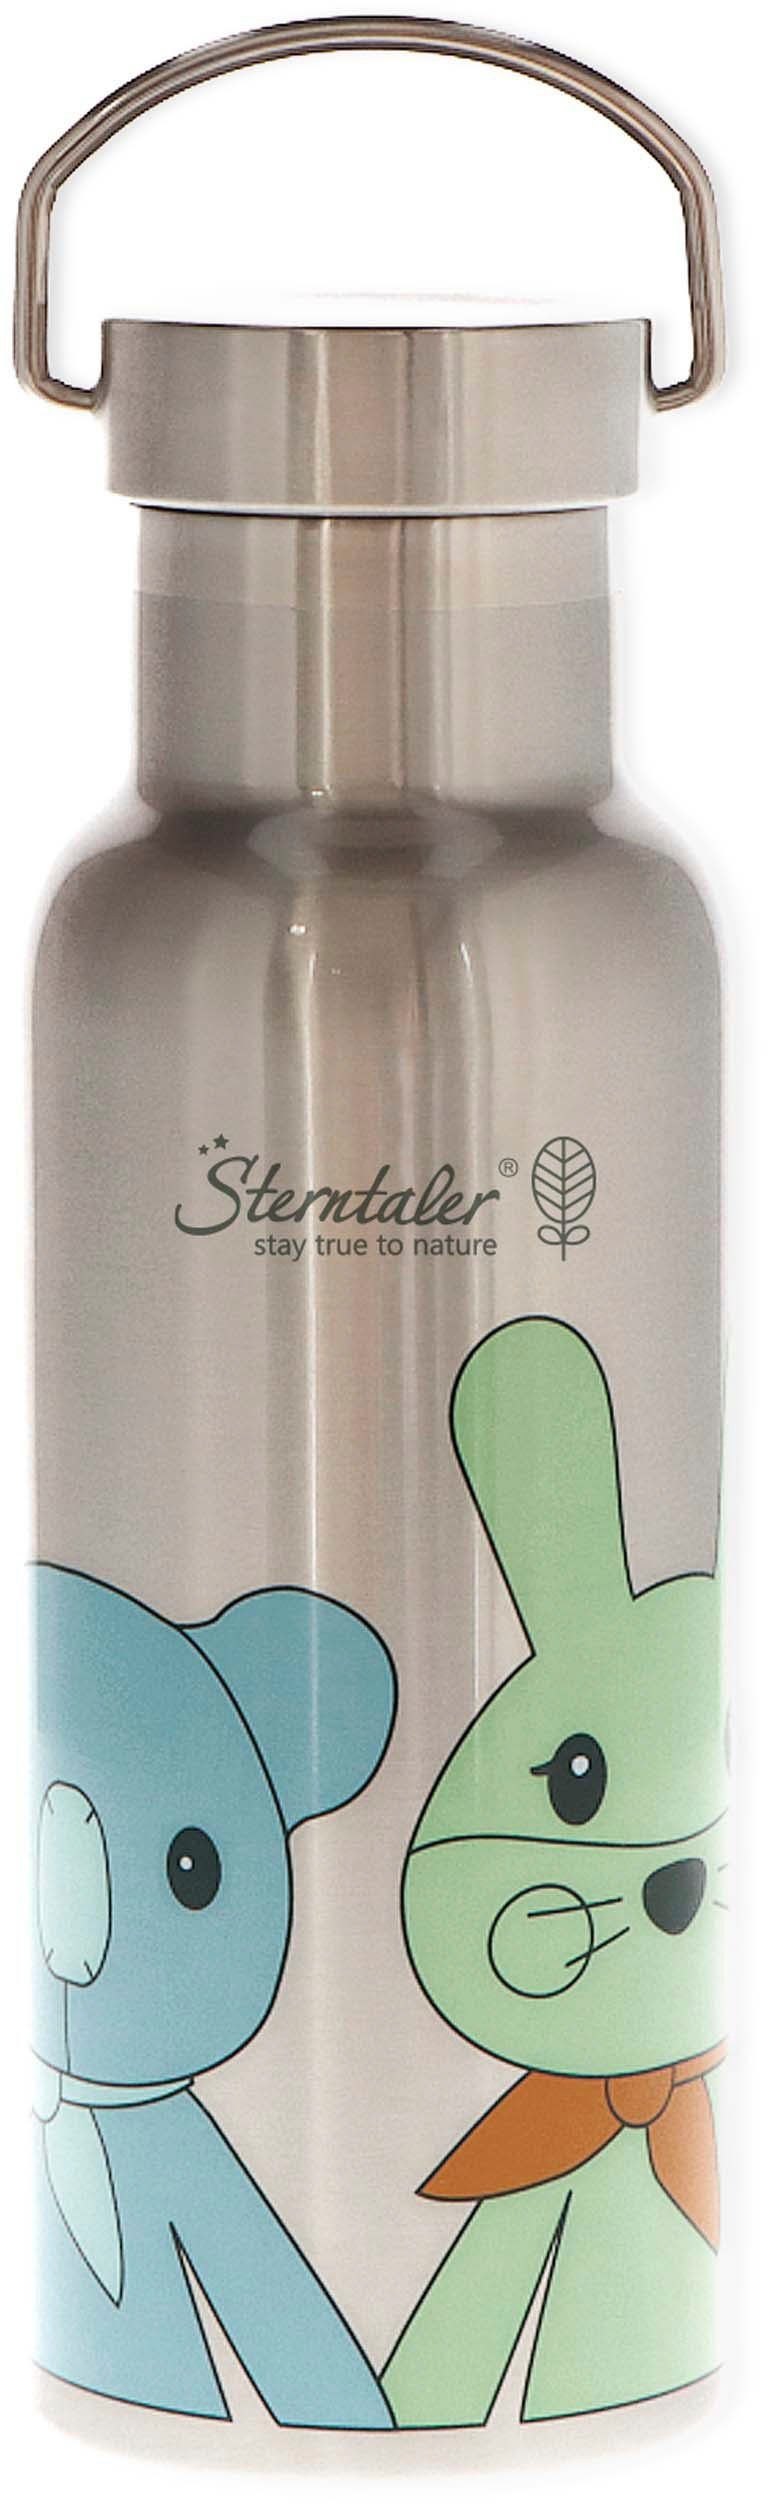 Sterntaler® Trinkflasche Stay true to für nature, Kinni+Kalla, Kinder